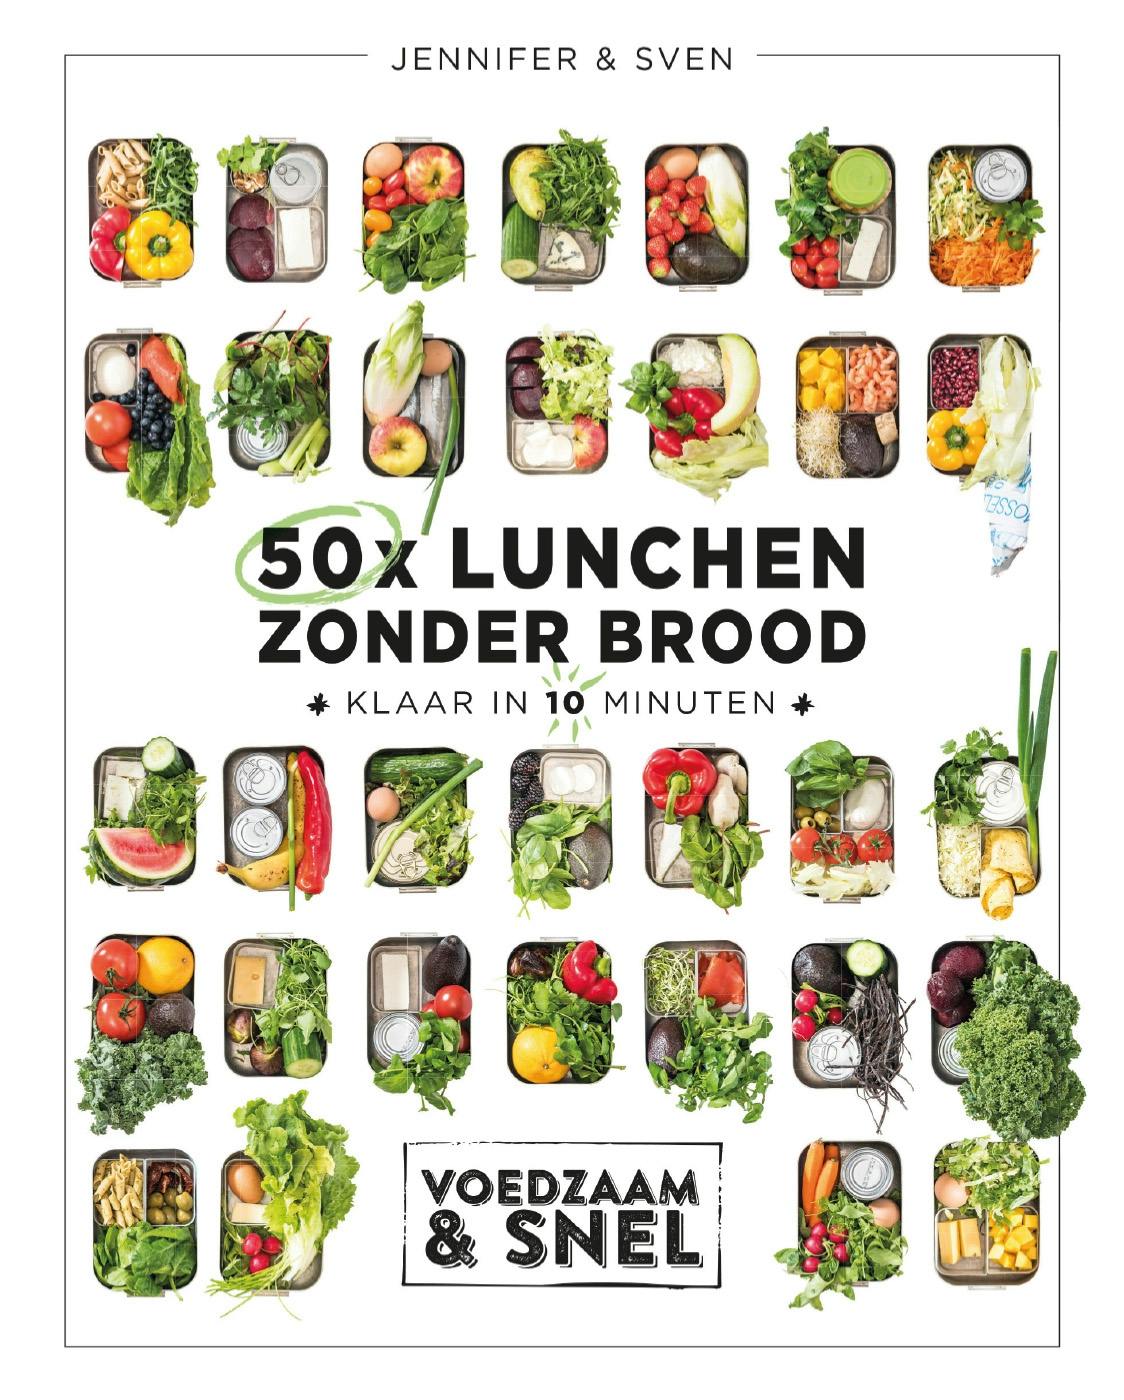 50x lunchen zonder brood: Klaar in 10 minuten - undefined